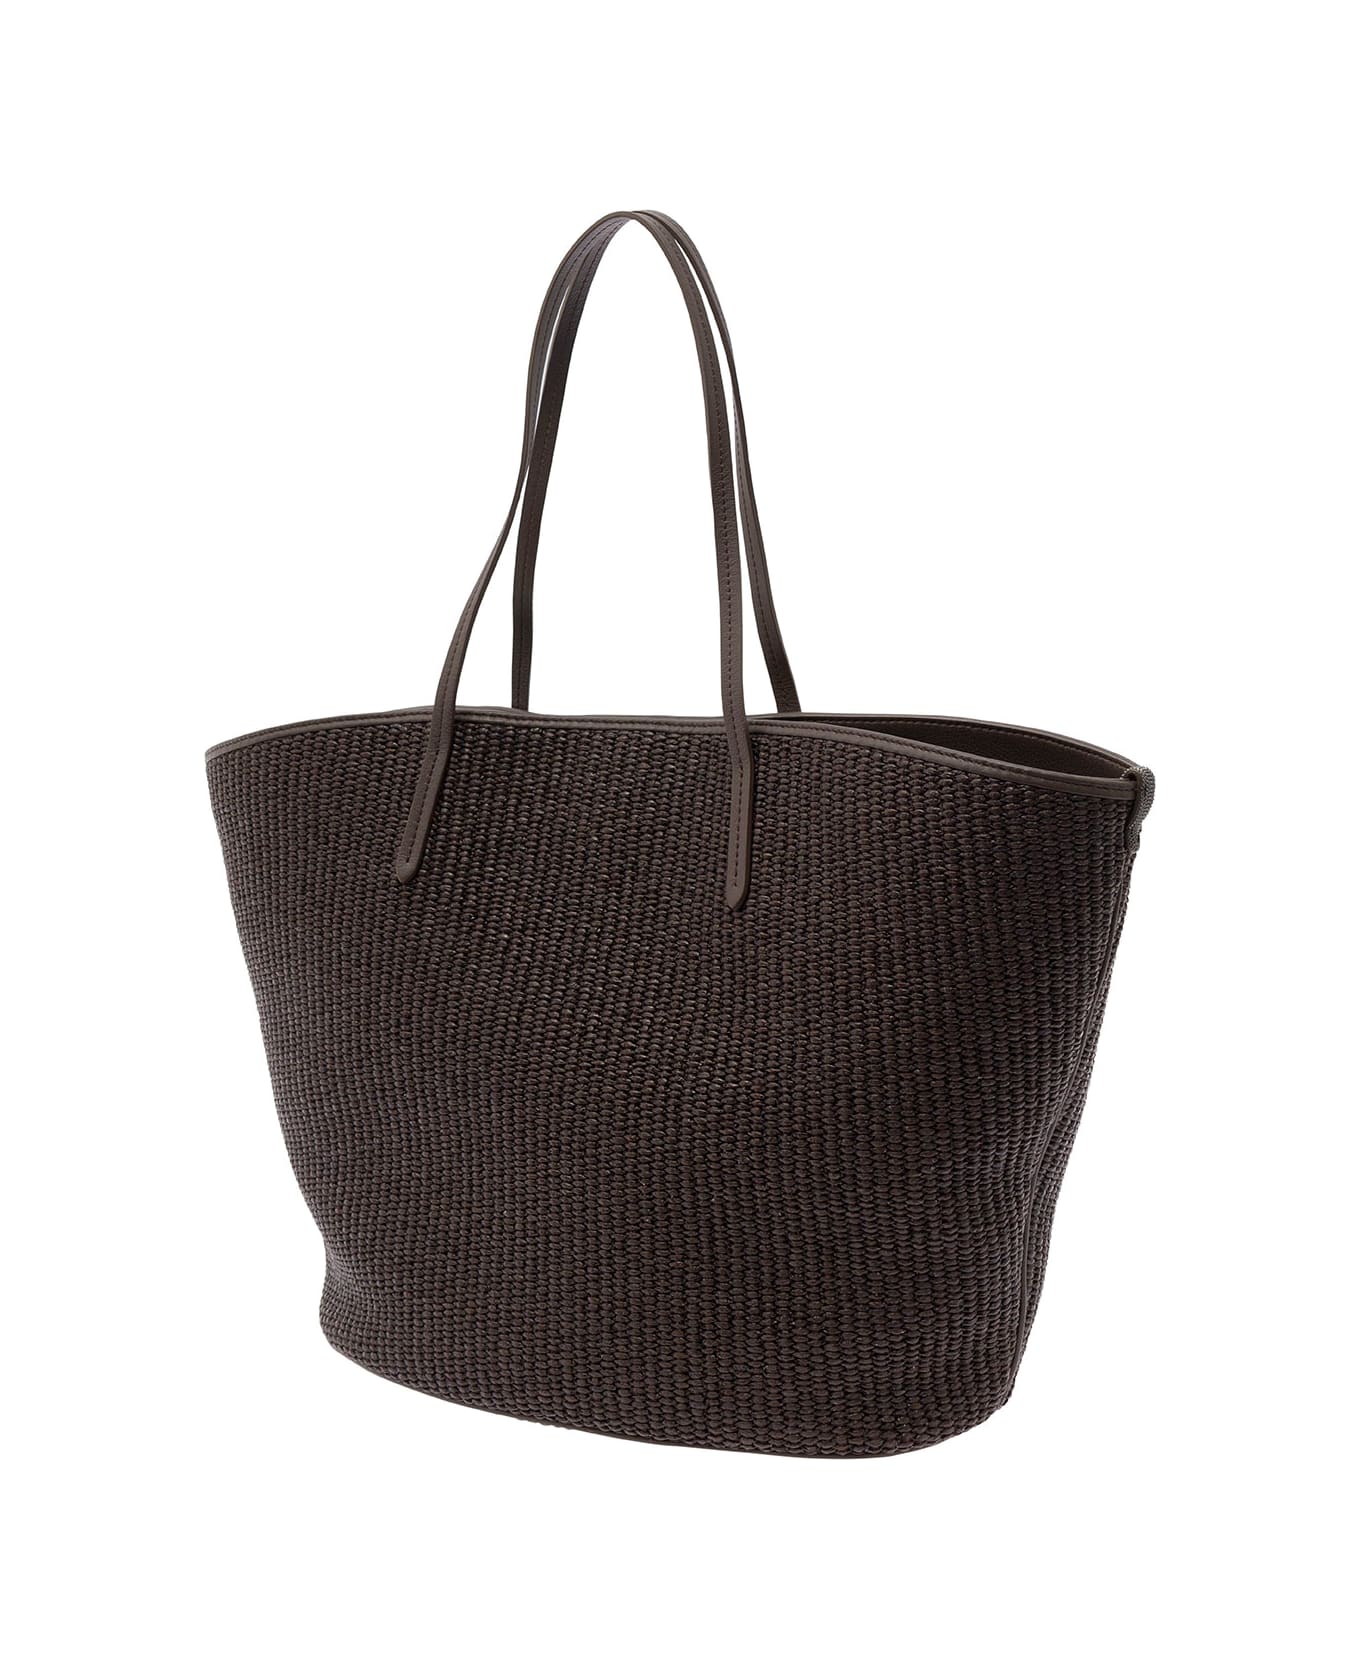 Brunello Cucinelli Brown Tote Bag With Monile Embellishment In Cotton Rafia Woman - Brown